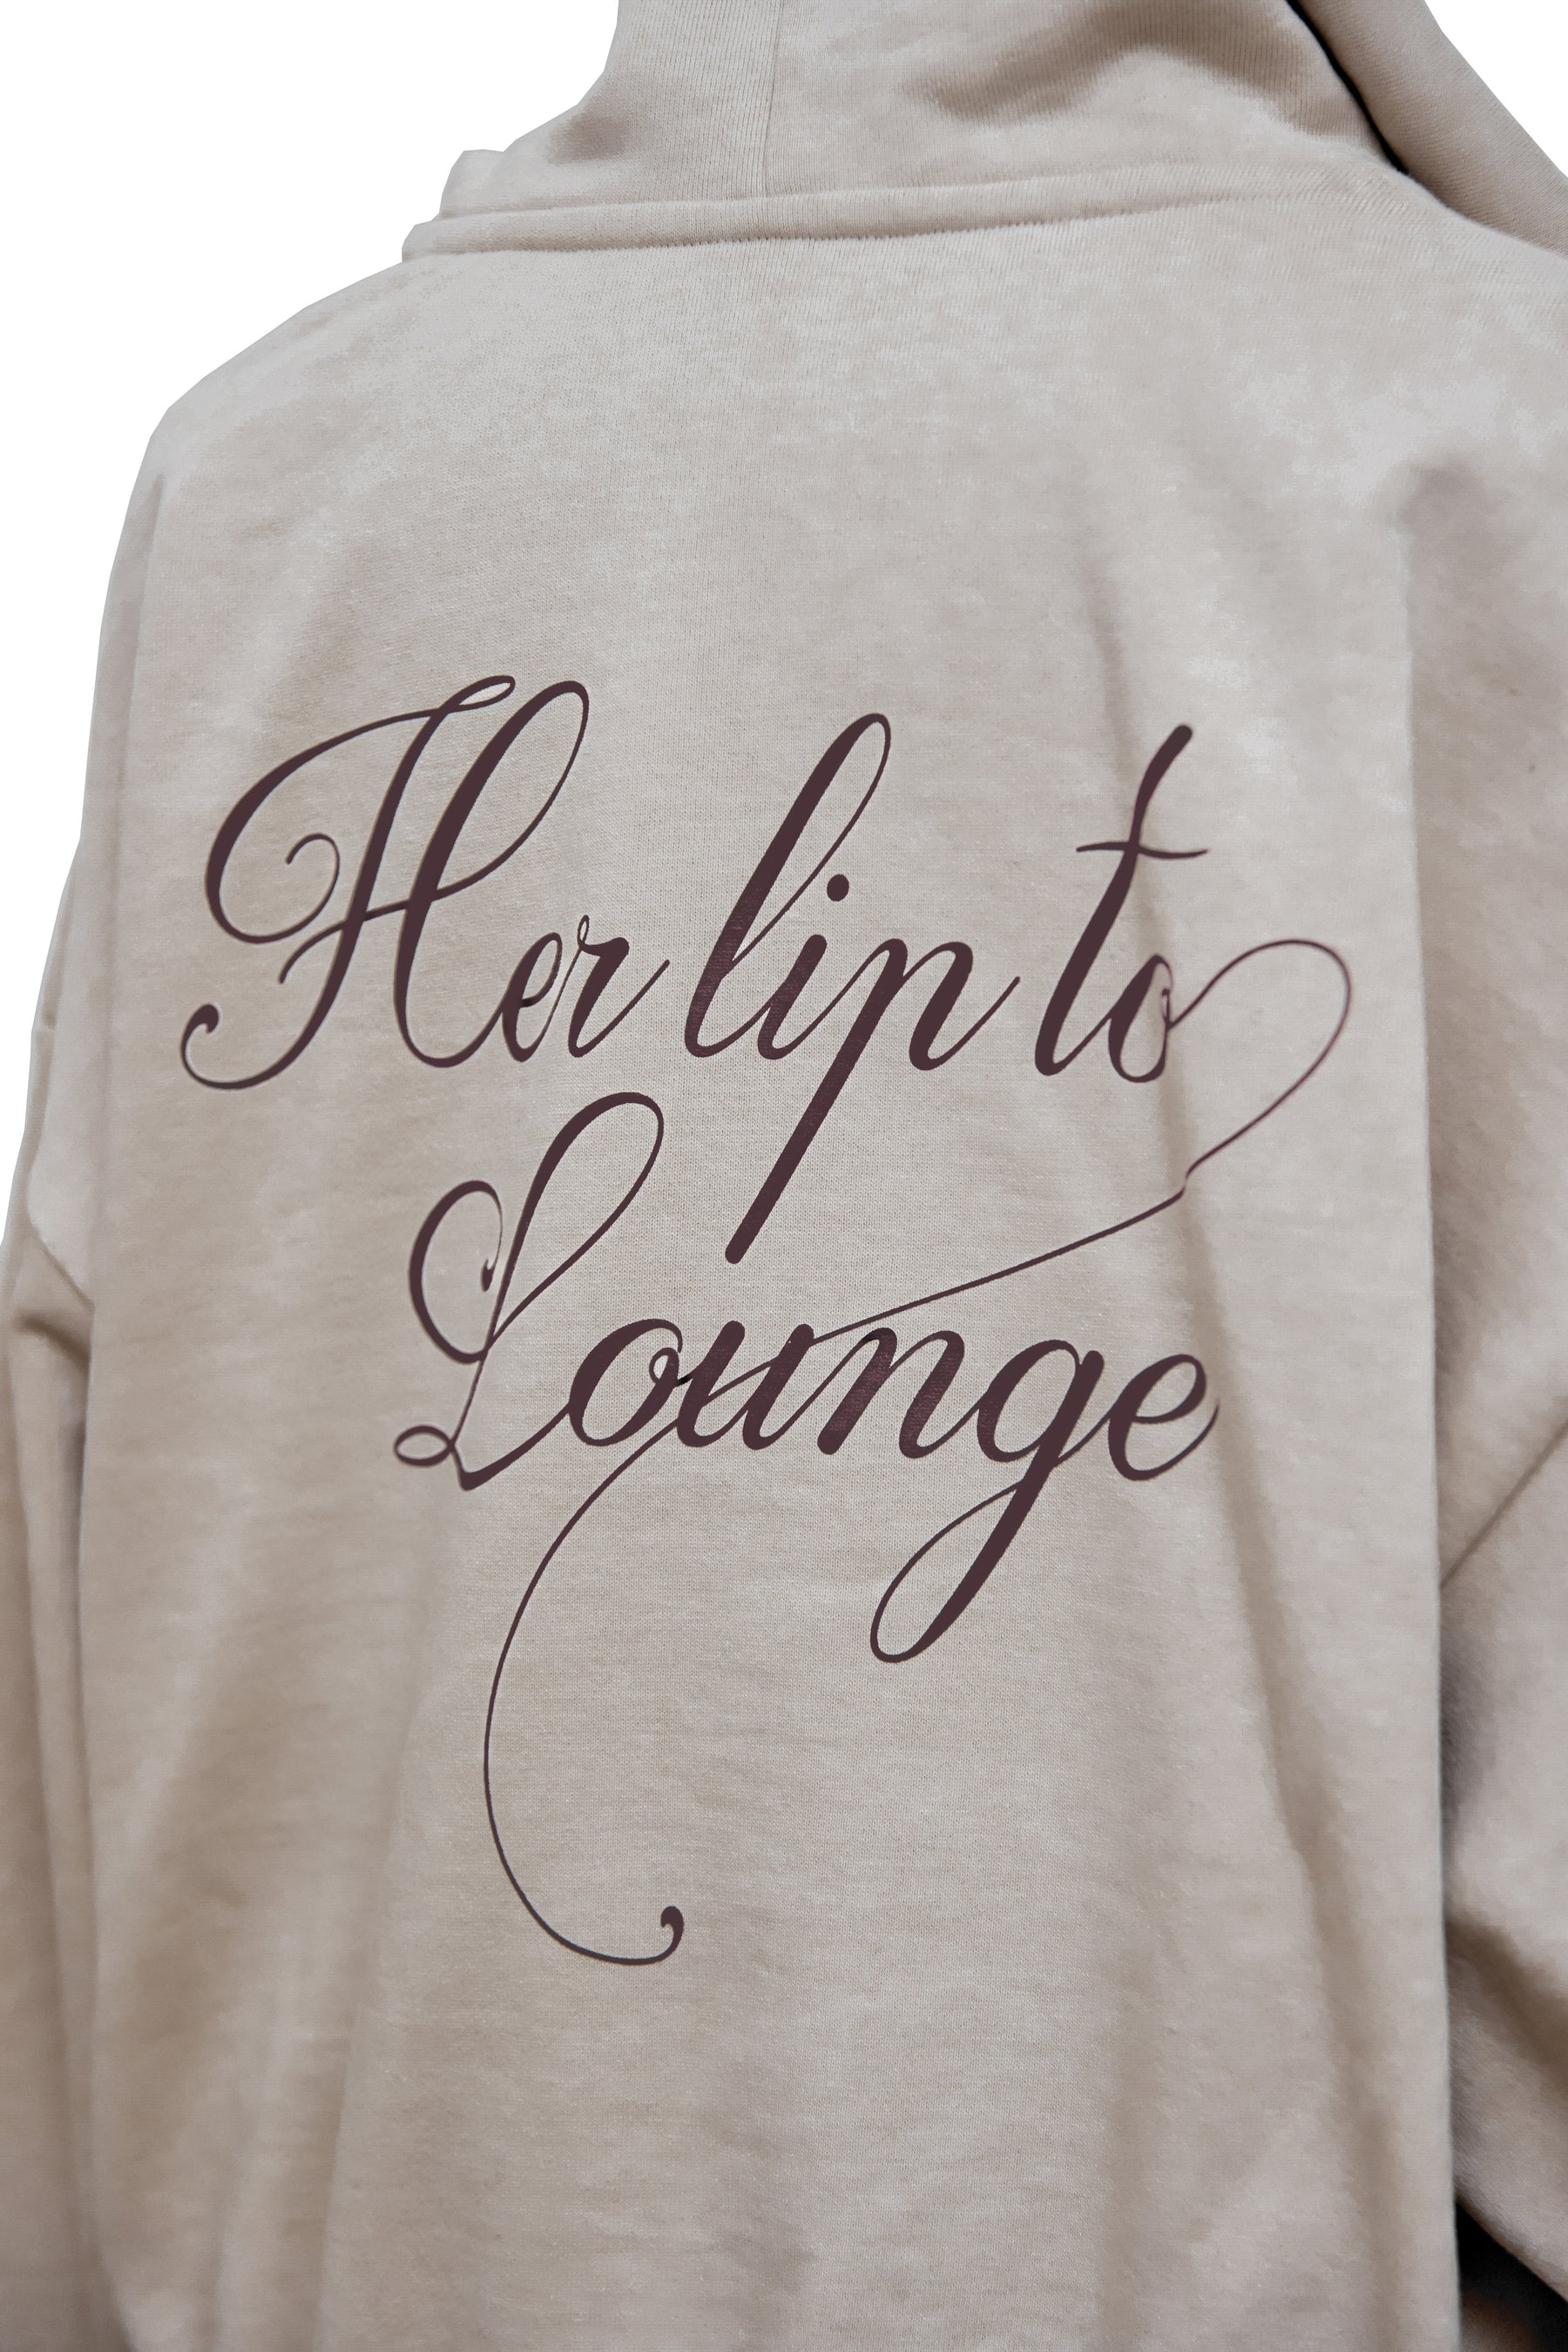 Herlipto 【XXL size】HLT Lounge Hoodie